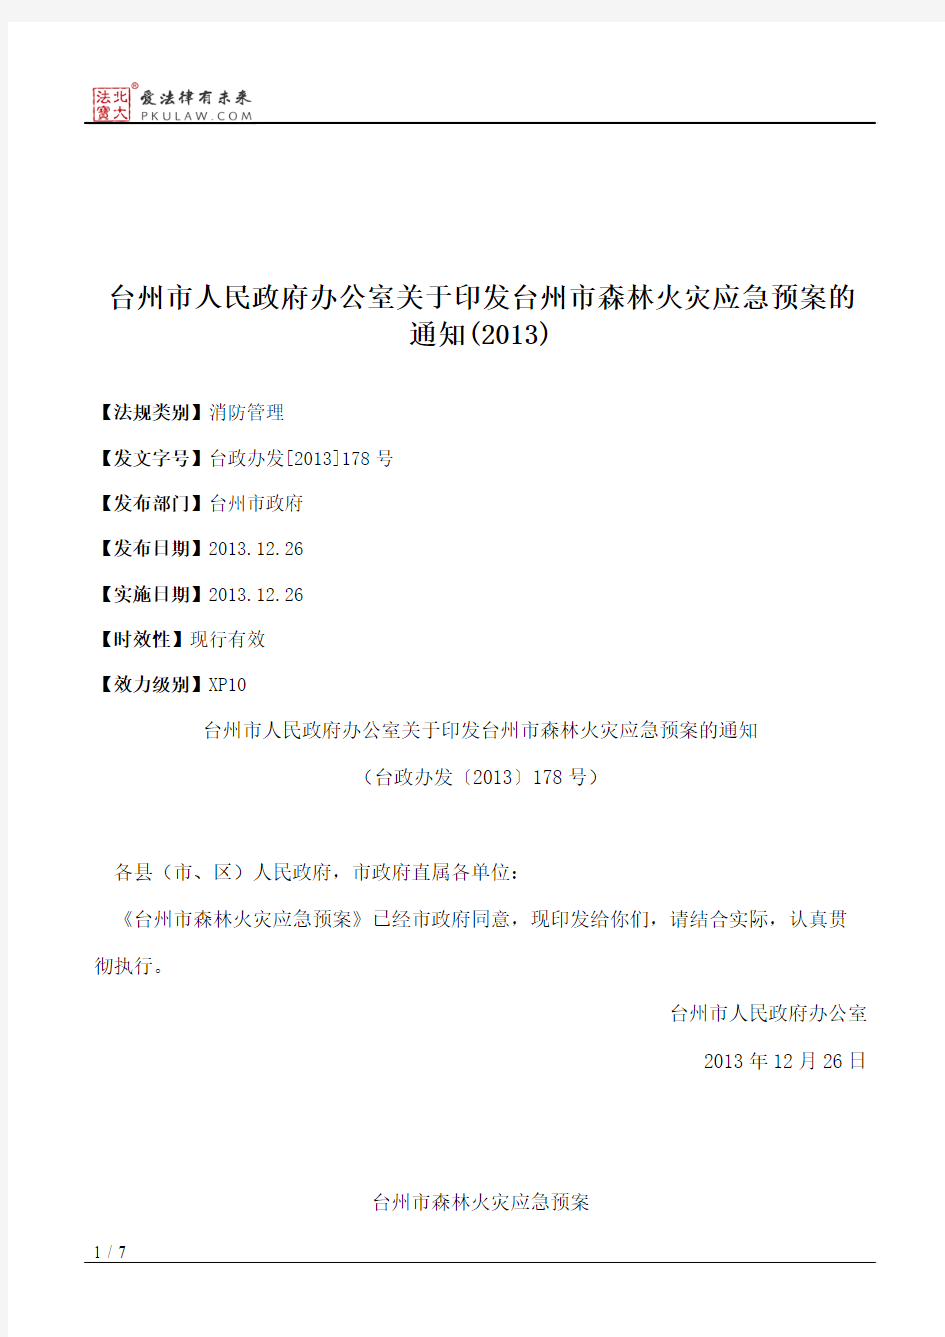 台州市人民政府办公室关于印发台州市森林火灾应急预案的通知(2013)